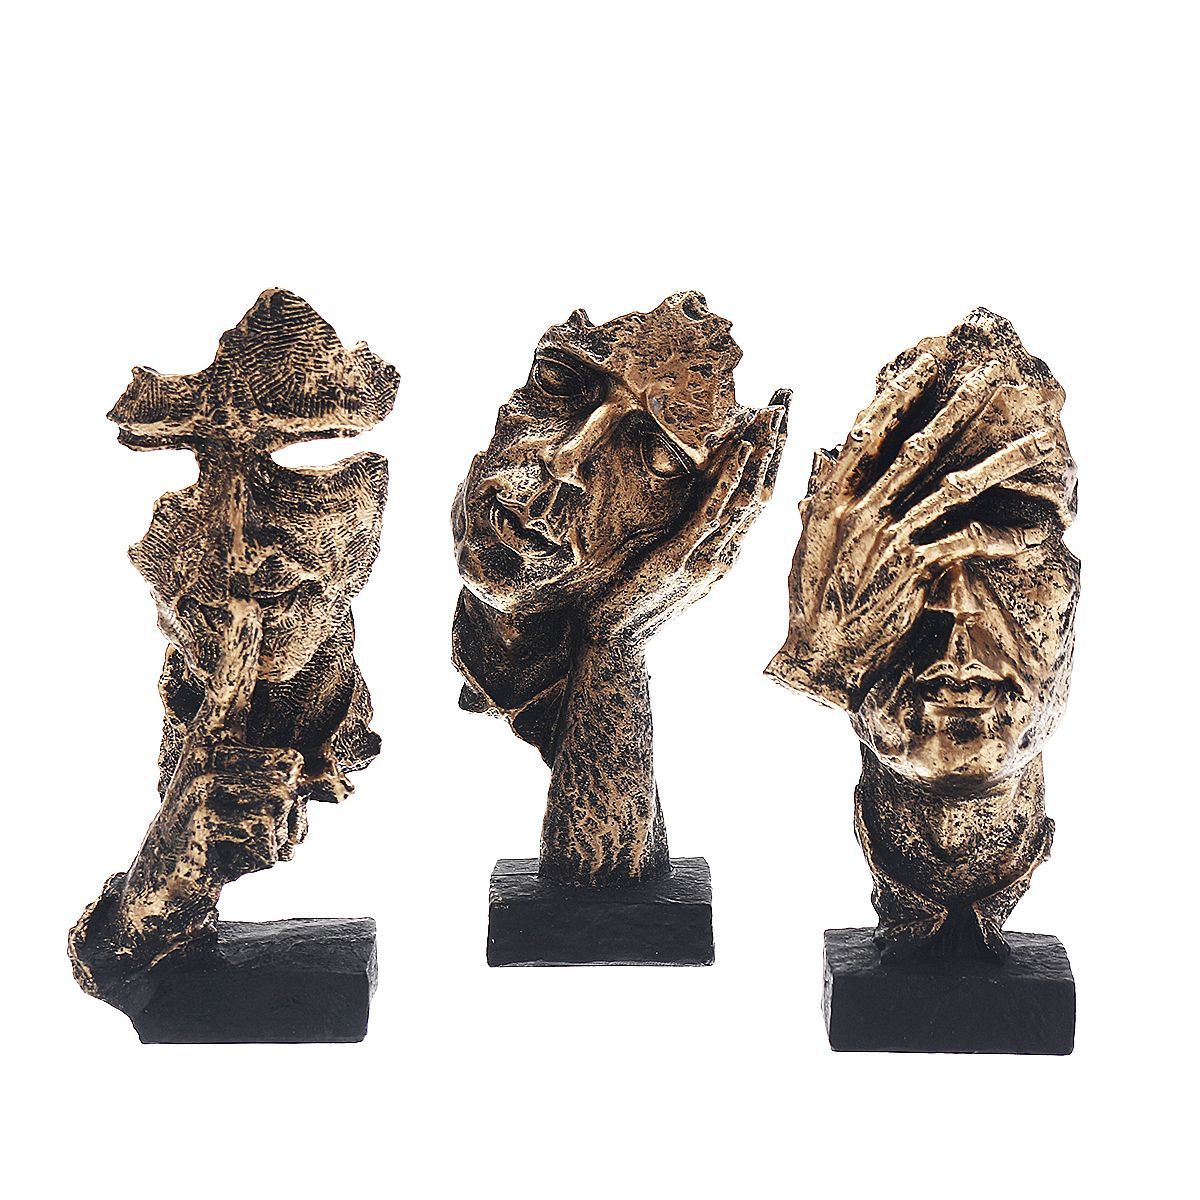 165cm-Modern-Resin-Figure-Statue-Abstract-Sculpture-Craft-Art-Home-Ornament-1719565